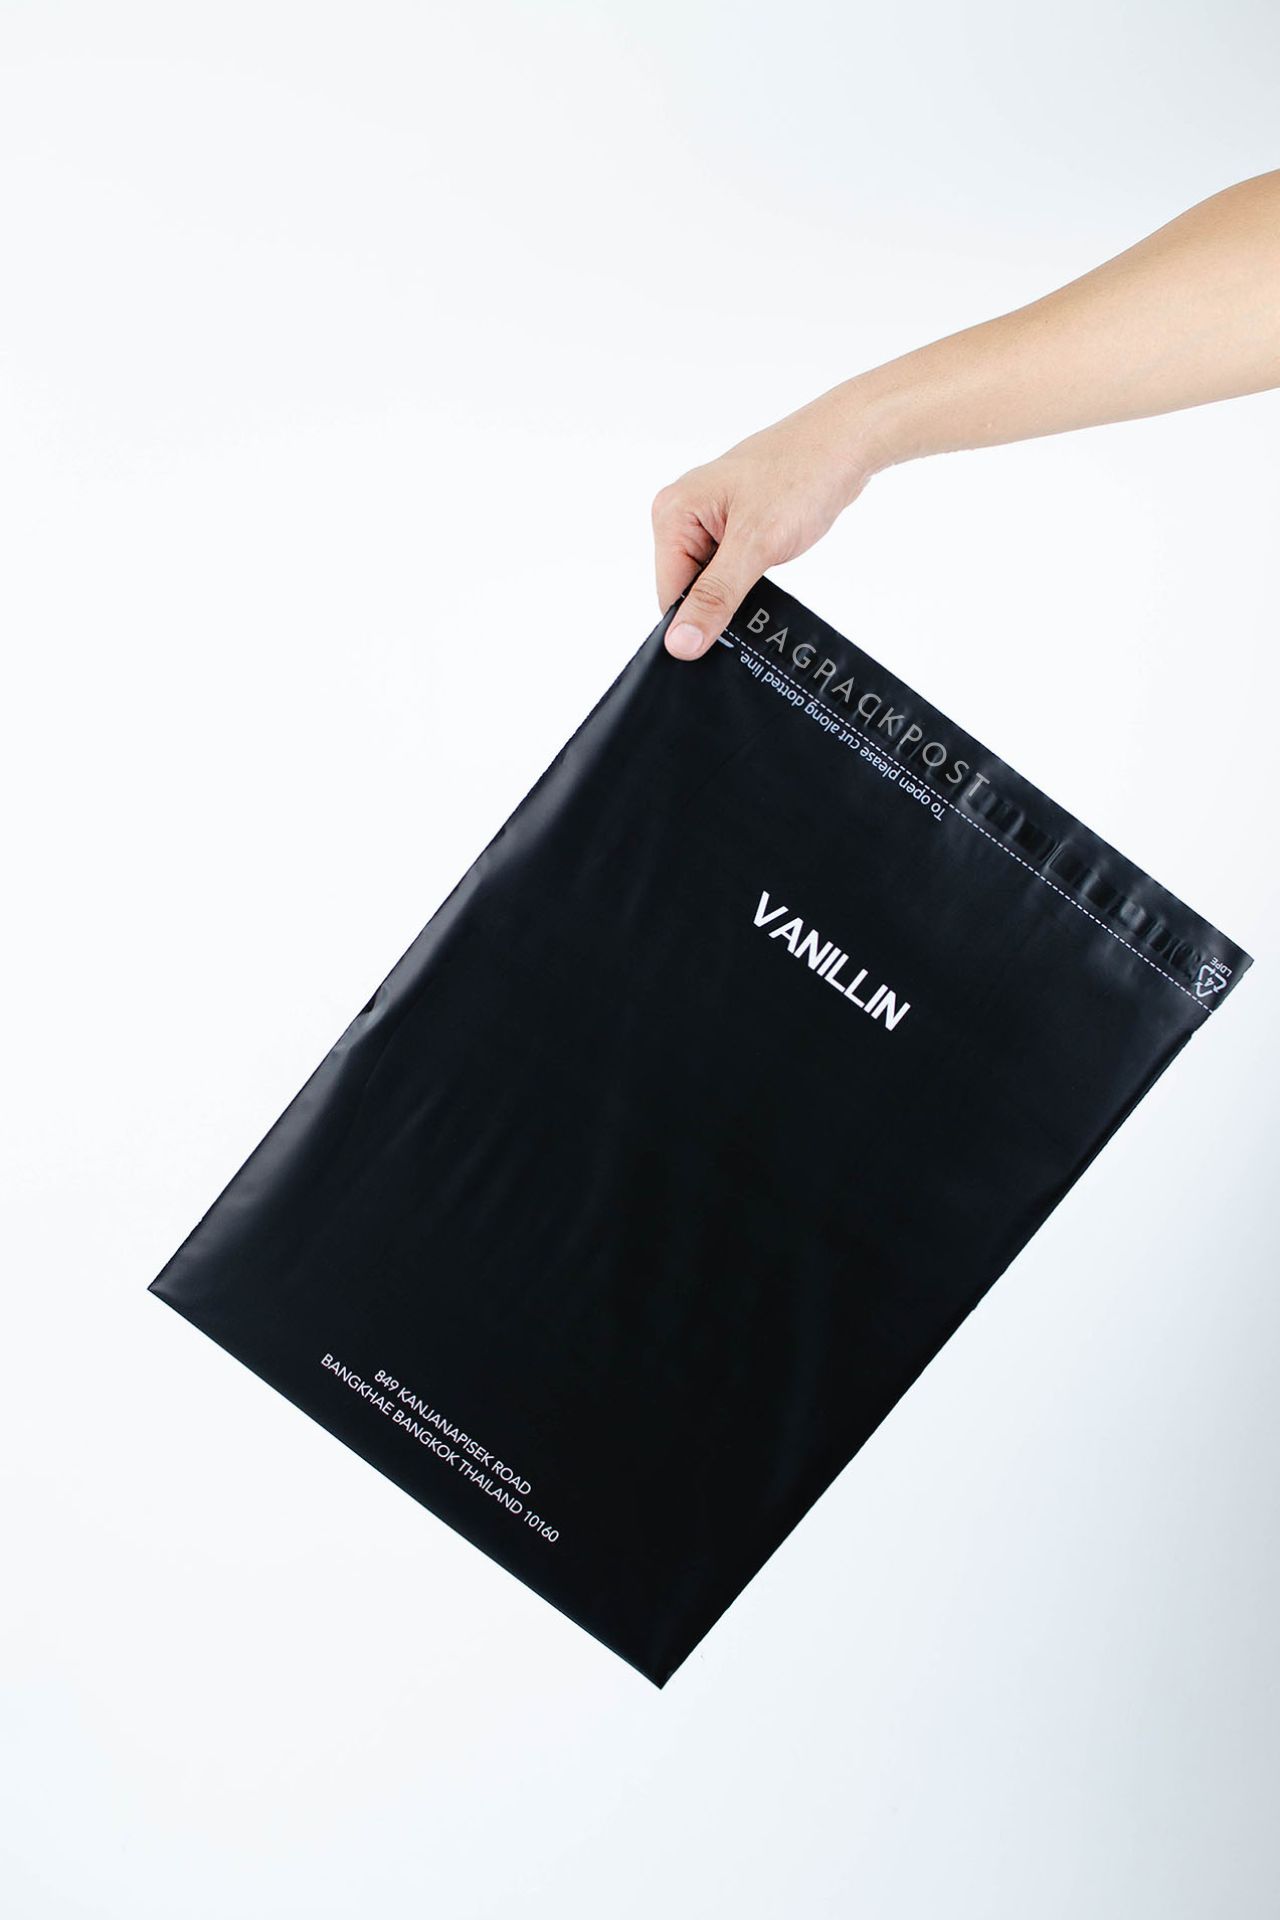 ผลิตถุงไปรษณีย์ ถุงพัสดุ ถุงพัสดุพิมพ์แบรนด์ ซองไปรษณีย์พิมพ์ลาย Vanillin Studio ซองไปรษณีย์สีดำ ถุงไปรษณีย์พิมพ์ลาย 5 BagPackPost